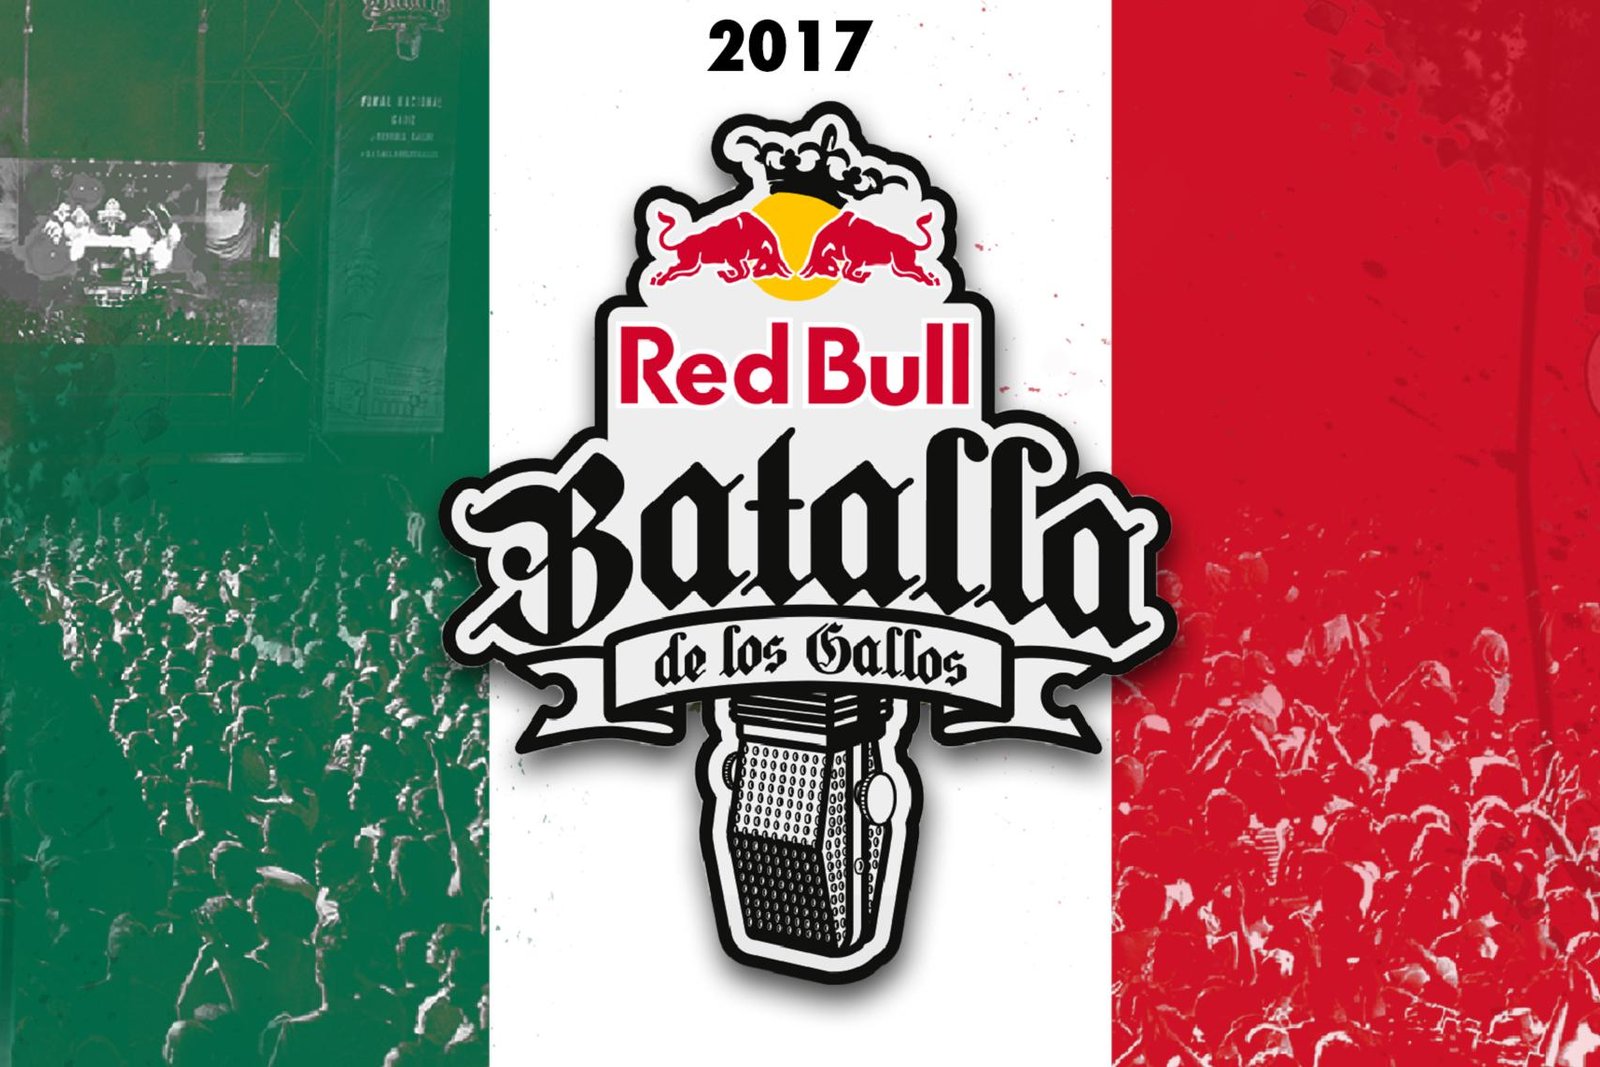 Previa-Final-Internacional-RedBull-Batalla-De-Los-Gallos-2017-El-V-Elemento